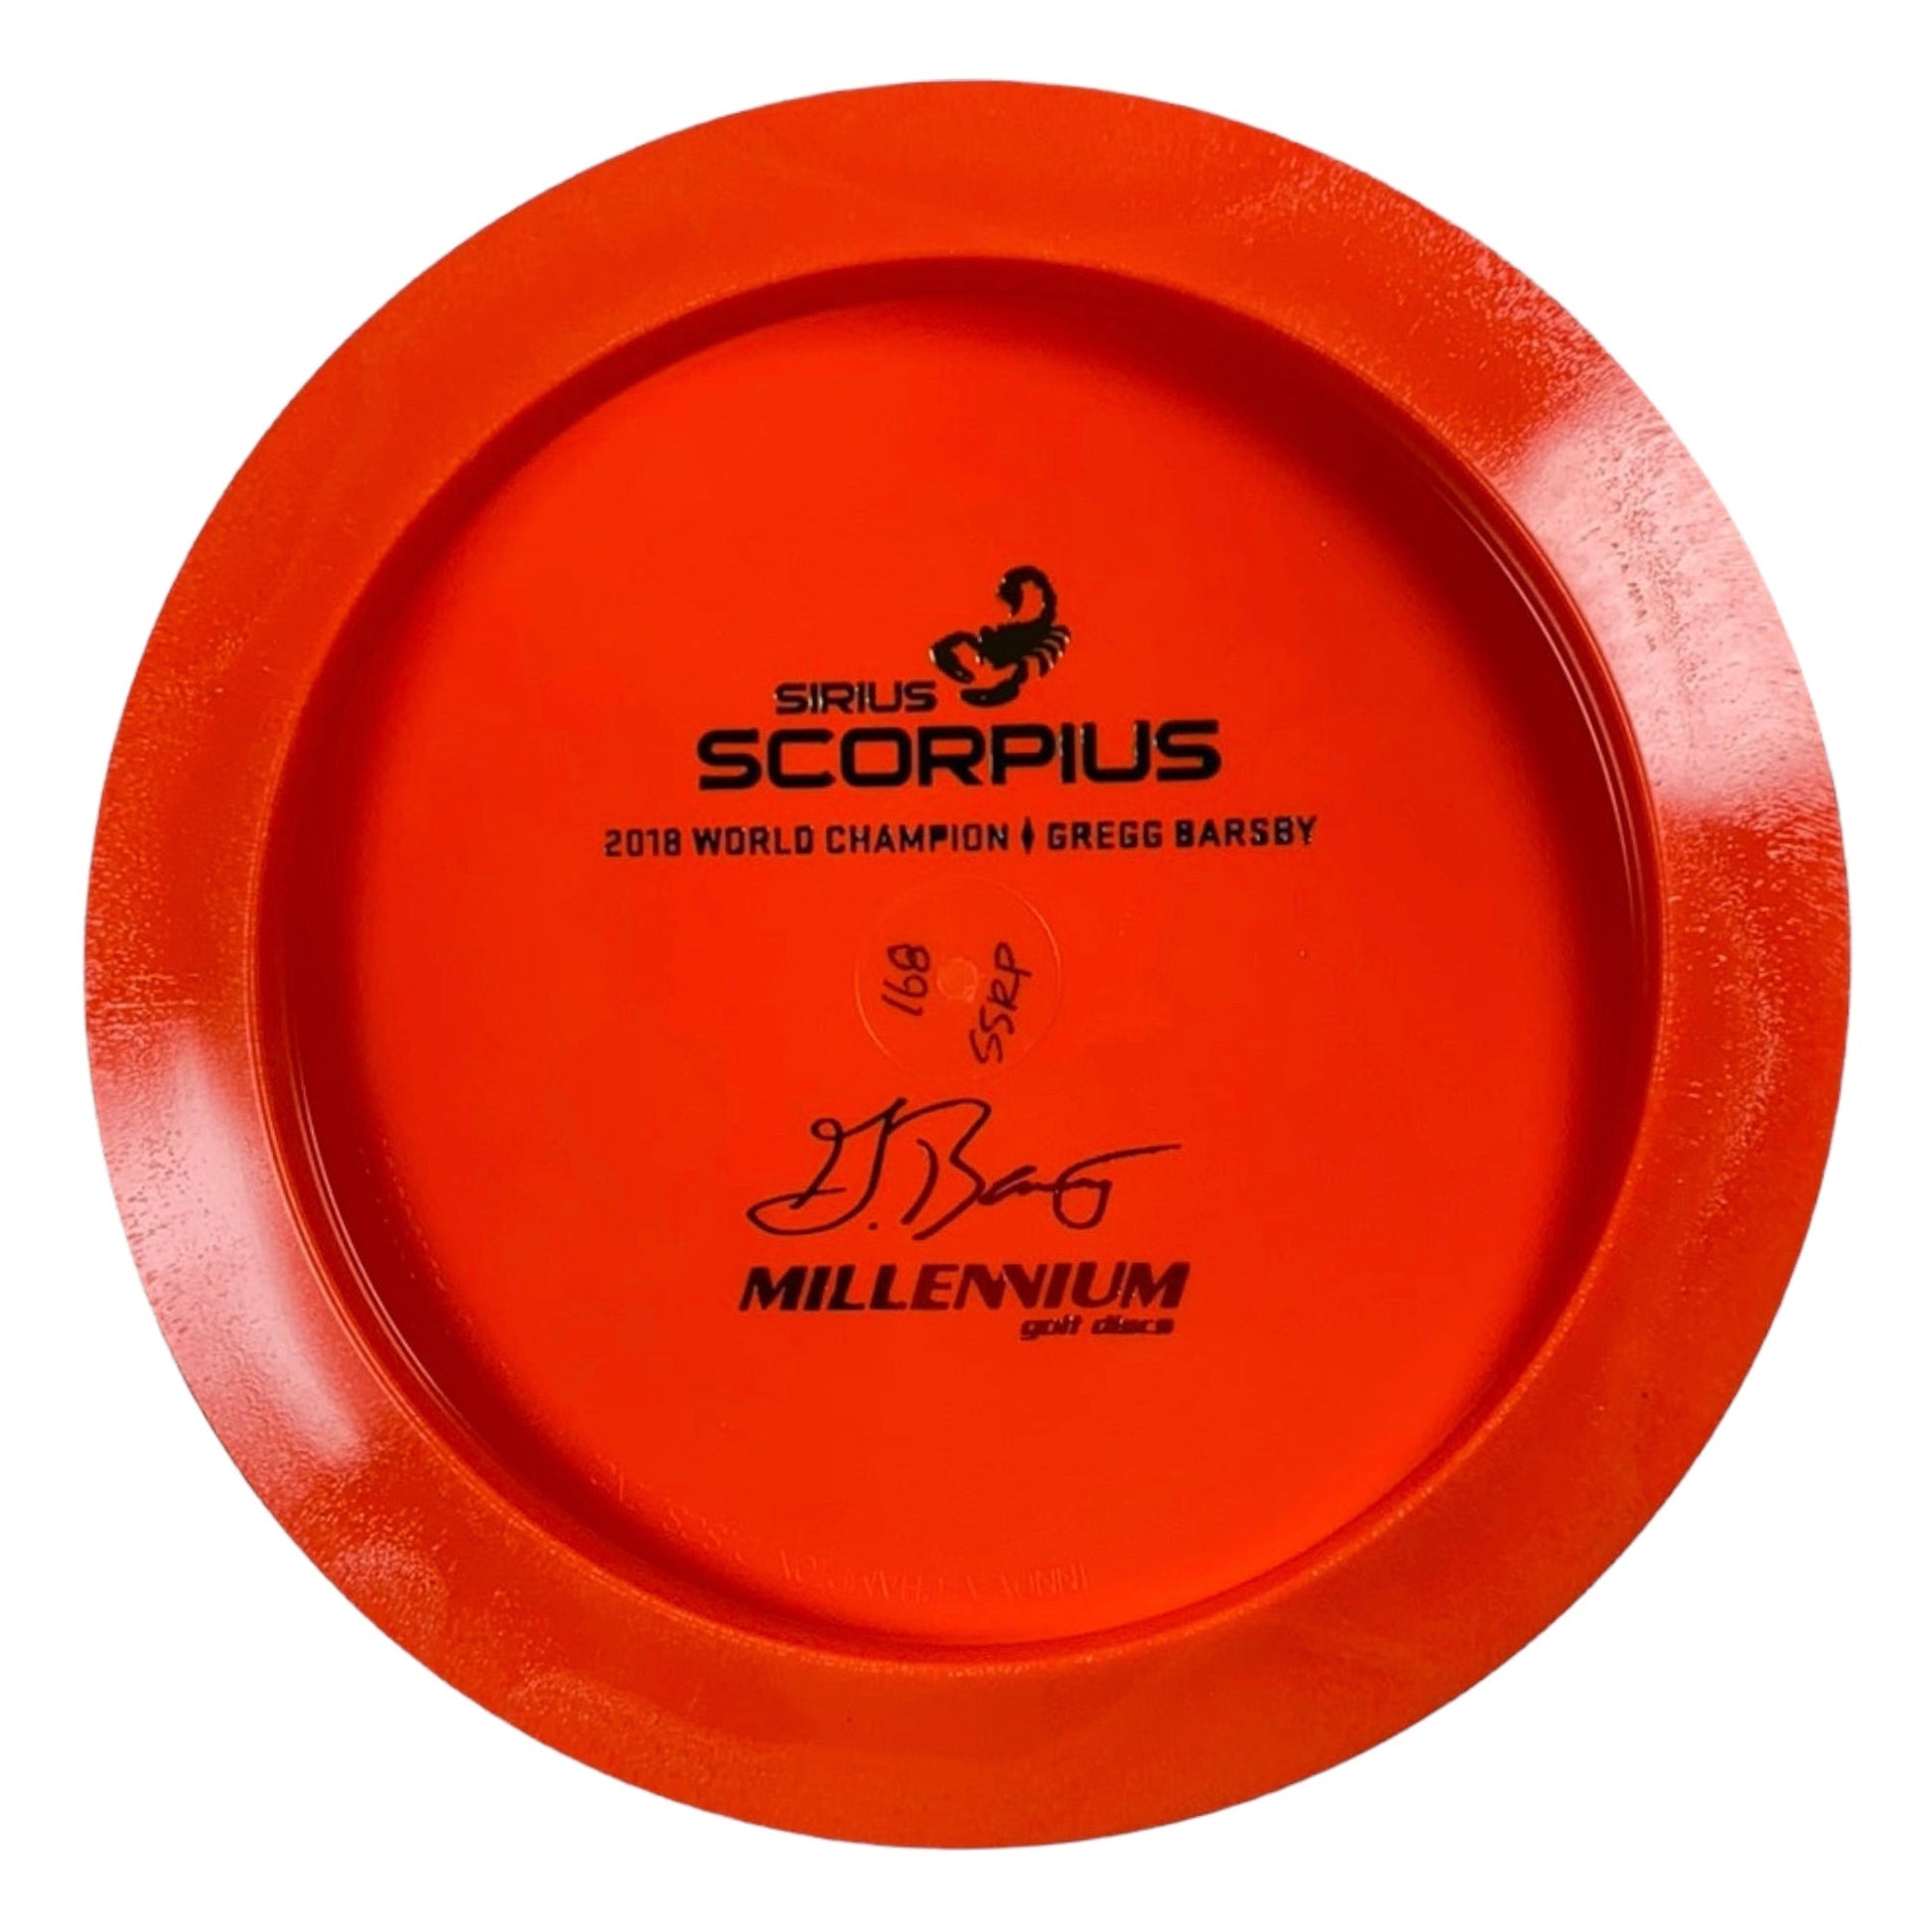 Millennium Golf Discs Scorpius | Sirius | Orange/Rainbow 167g (Gregg Barsby) Disc Golf